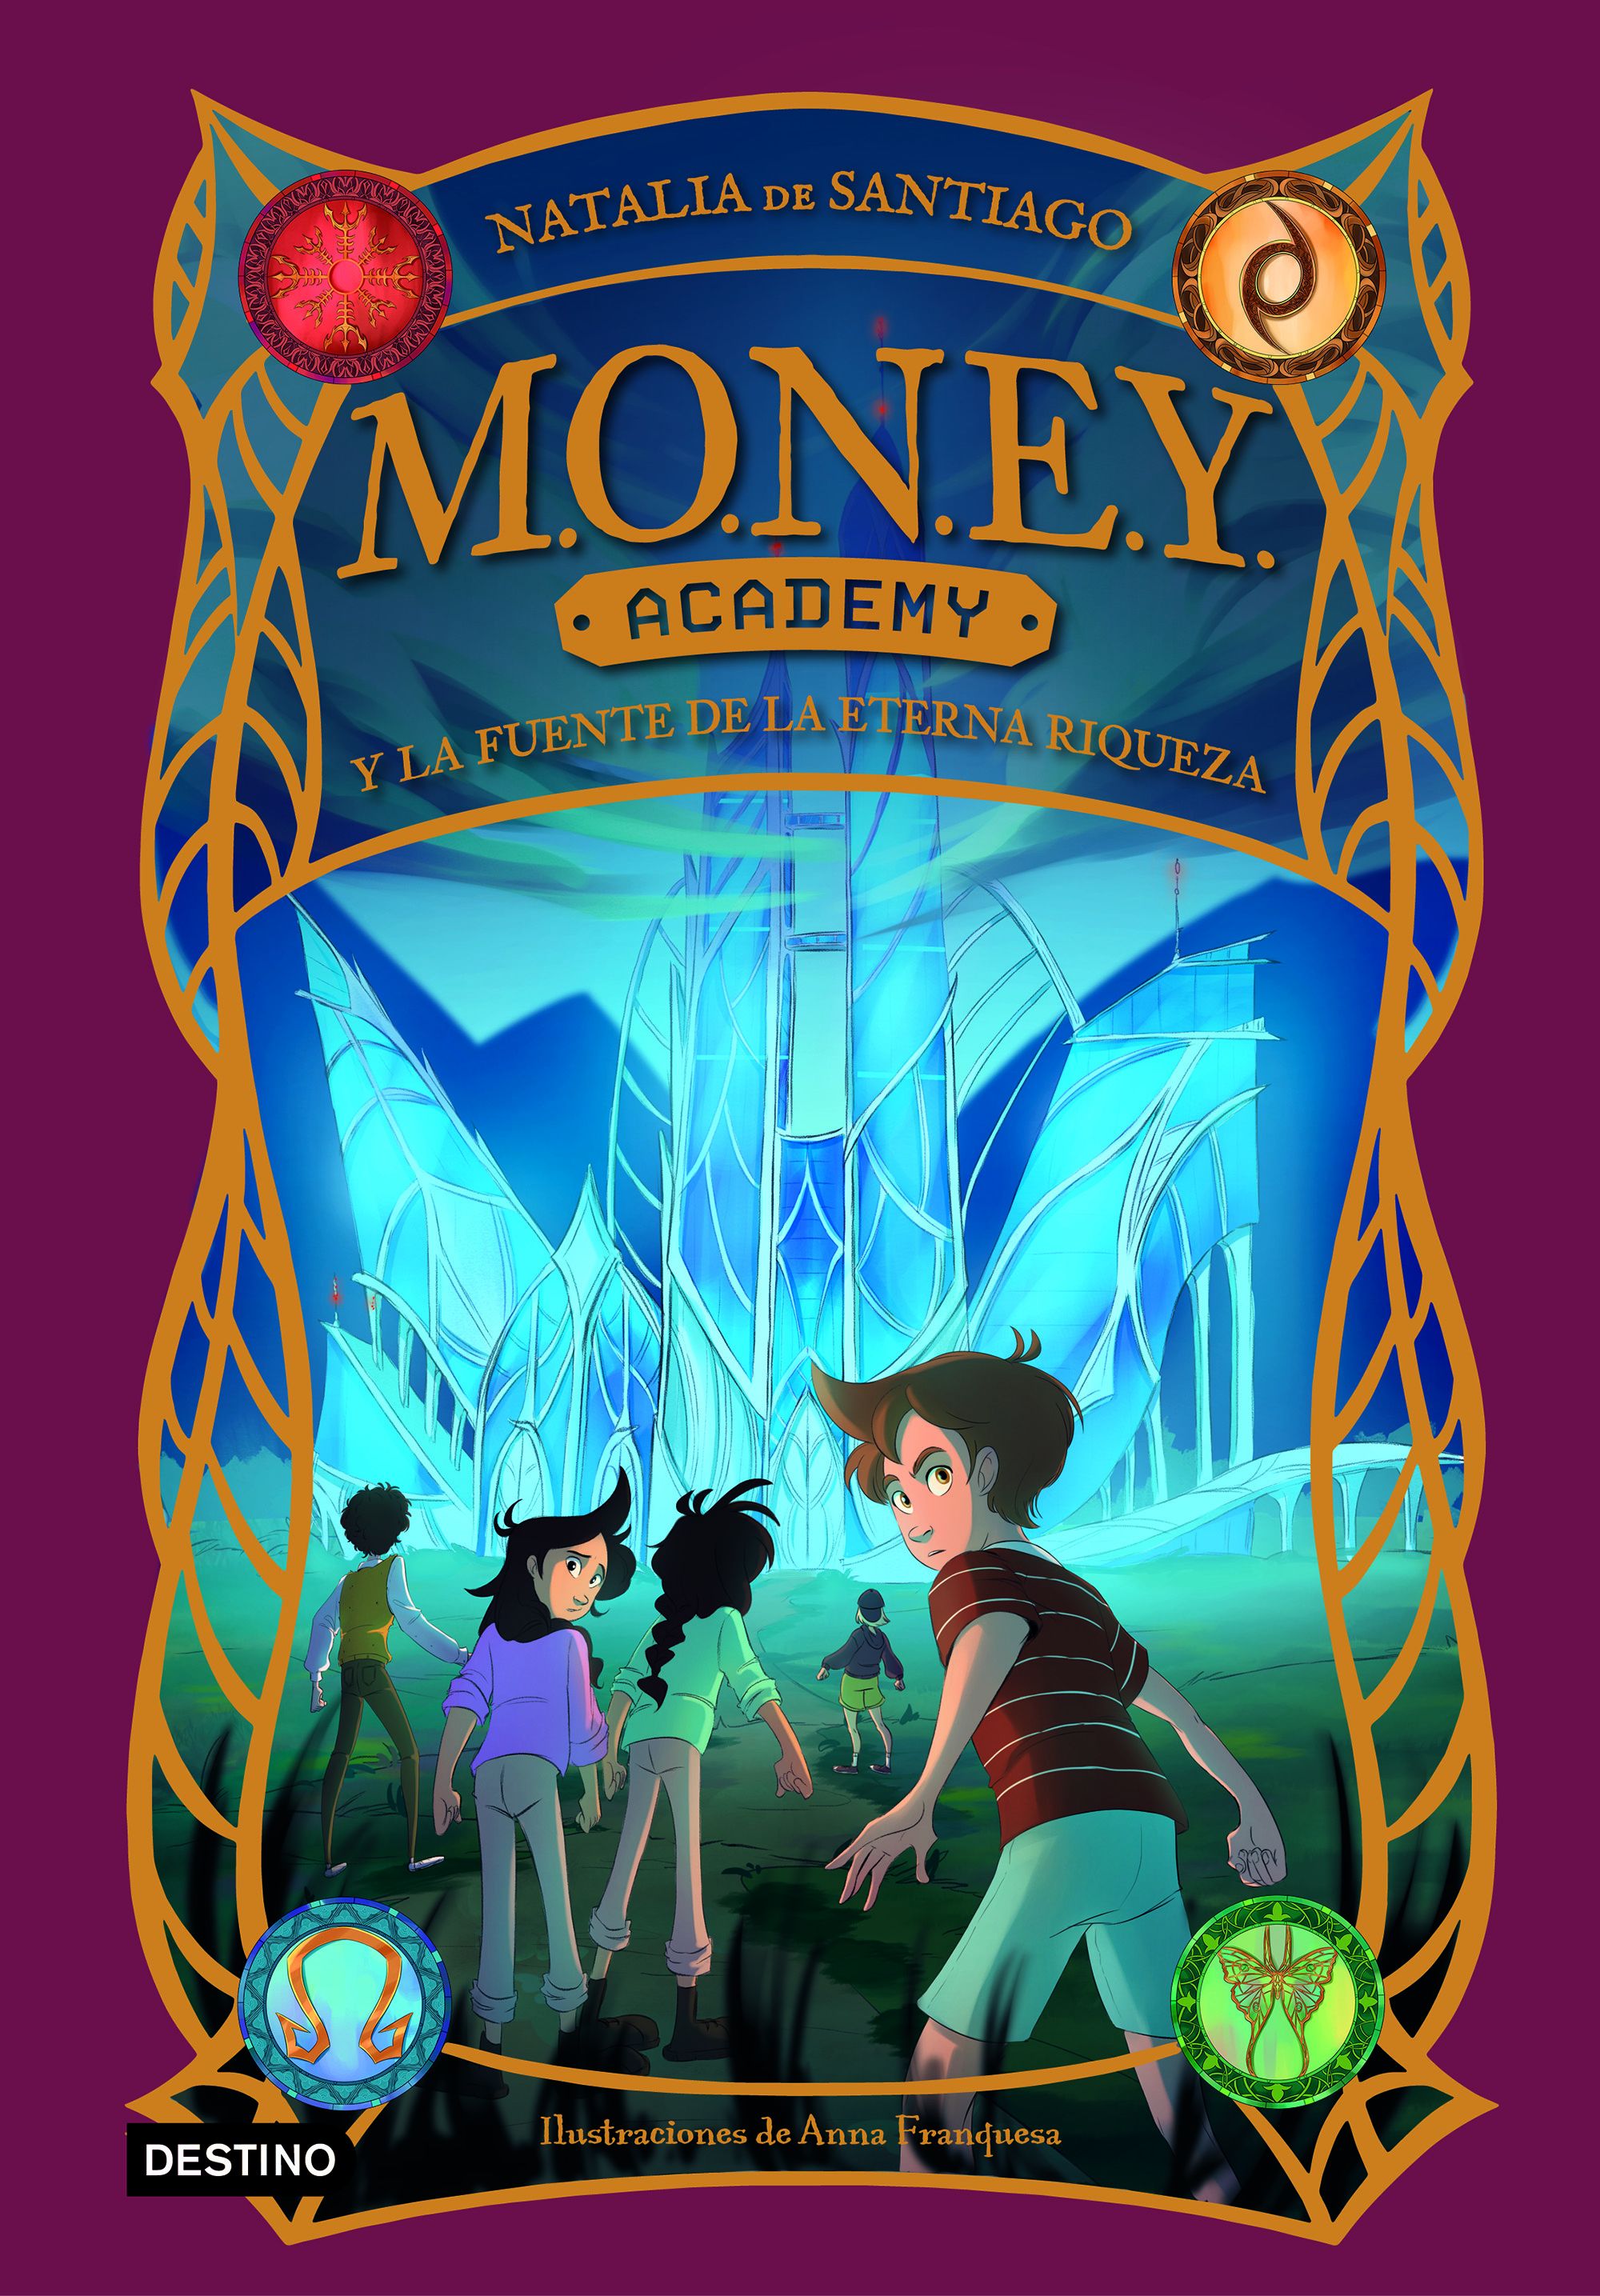 MONEY Academy y la fuente de la eterna riqueza